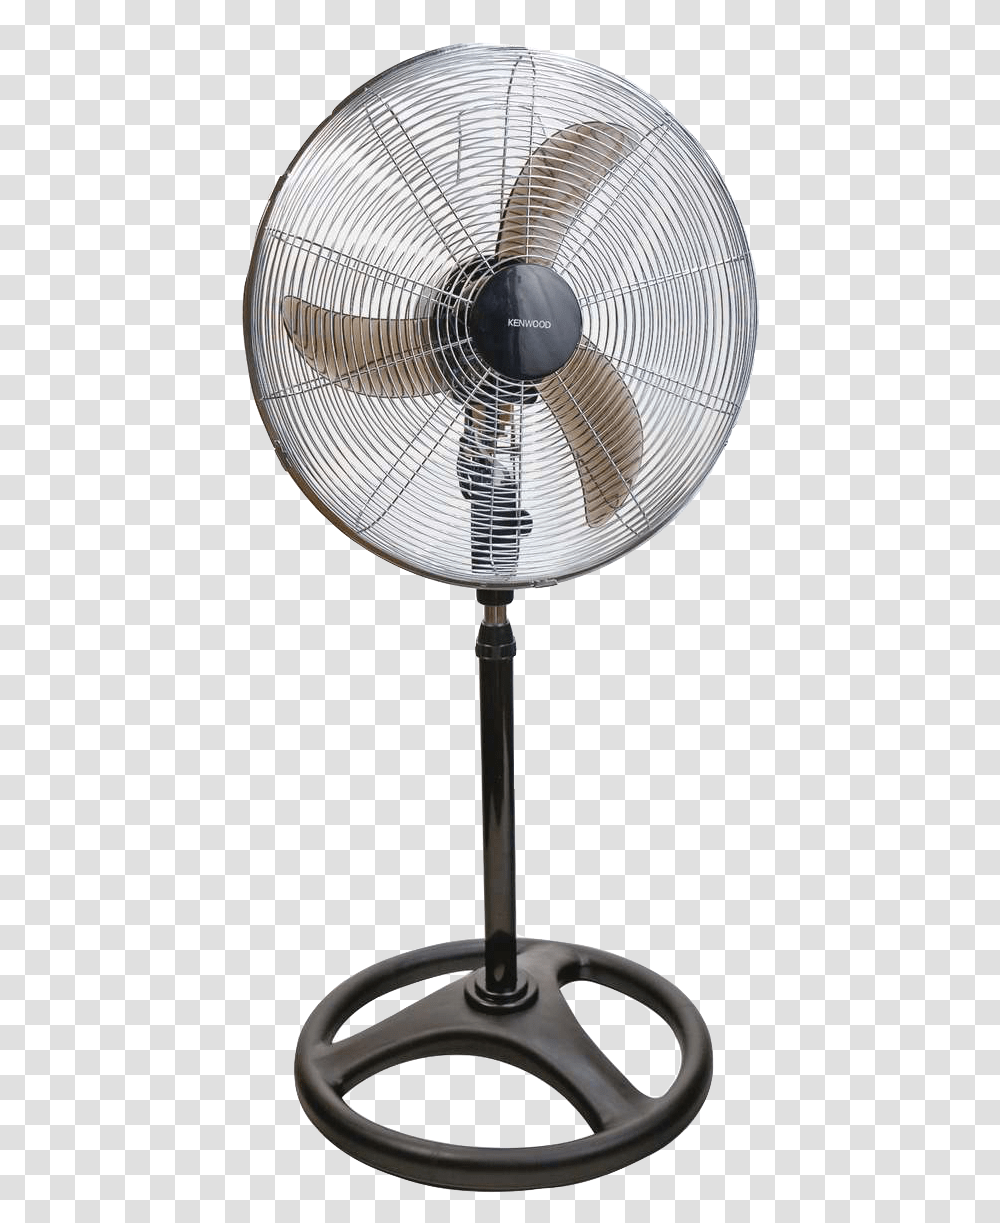 Standing Fan Standing Fan, Lamp, Electric Fan Transparent Png